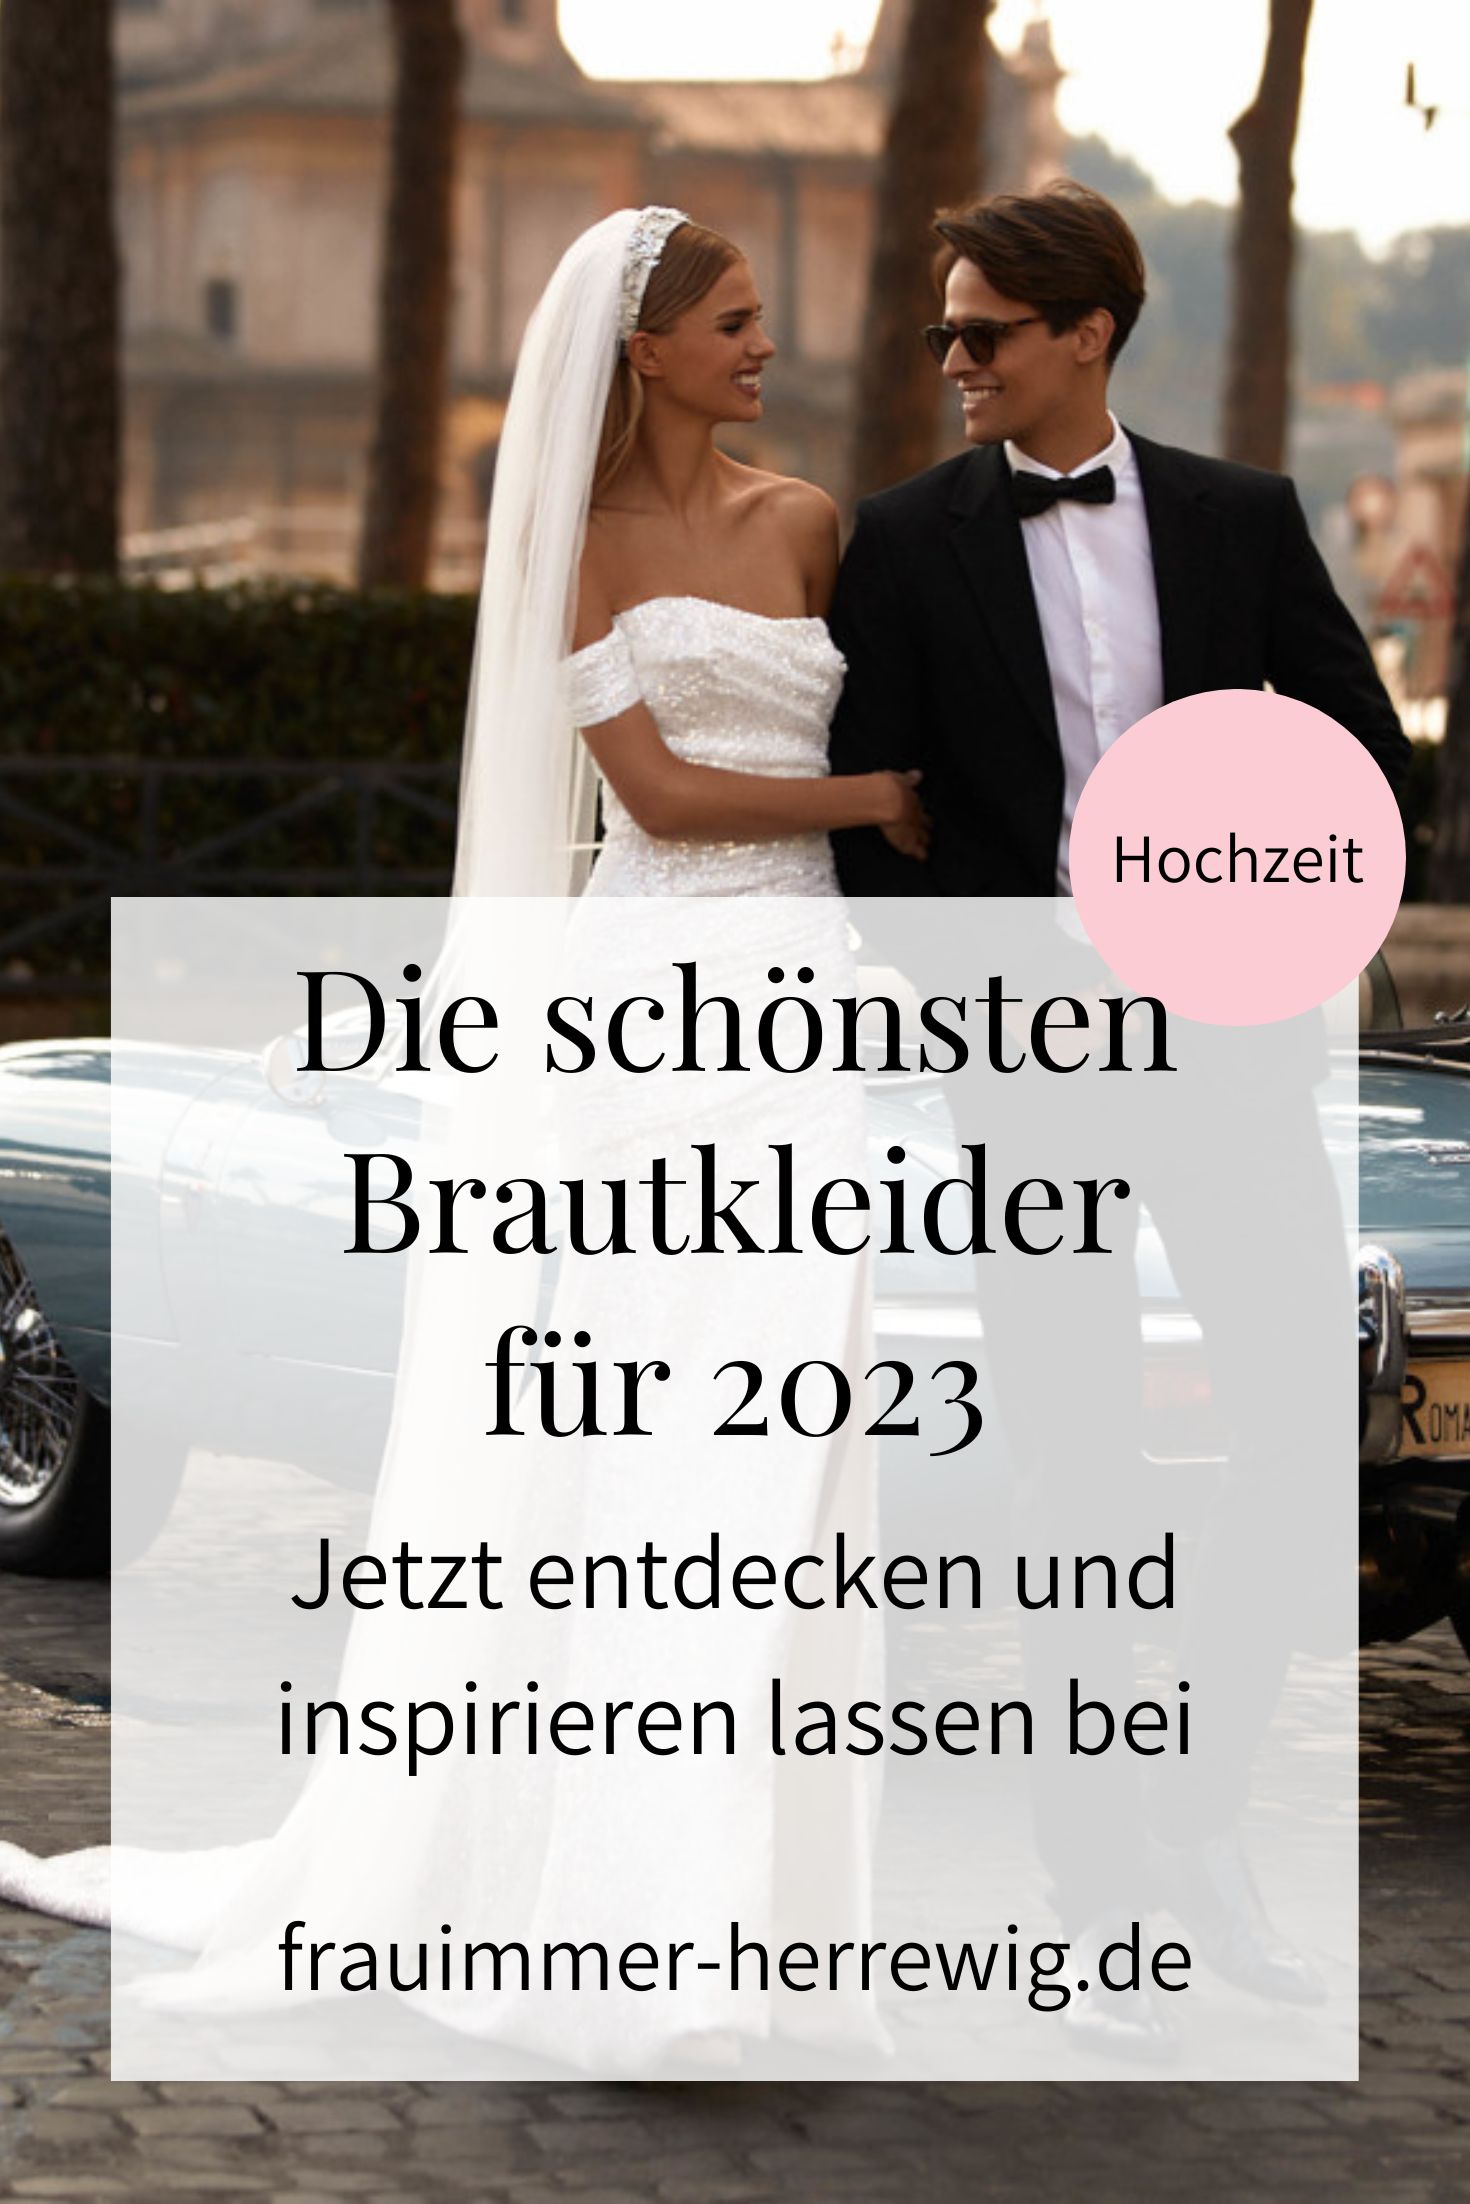 Brautkleider fuer 2023 – gesehen bei frauimmer-herrewig.de